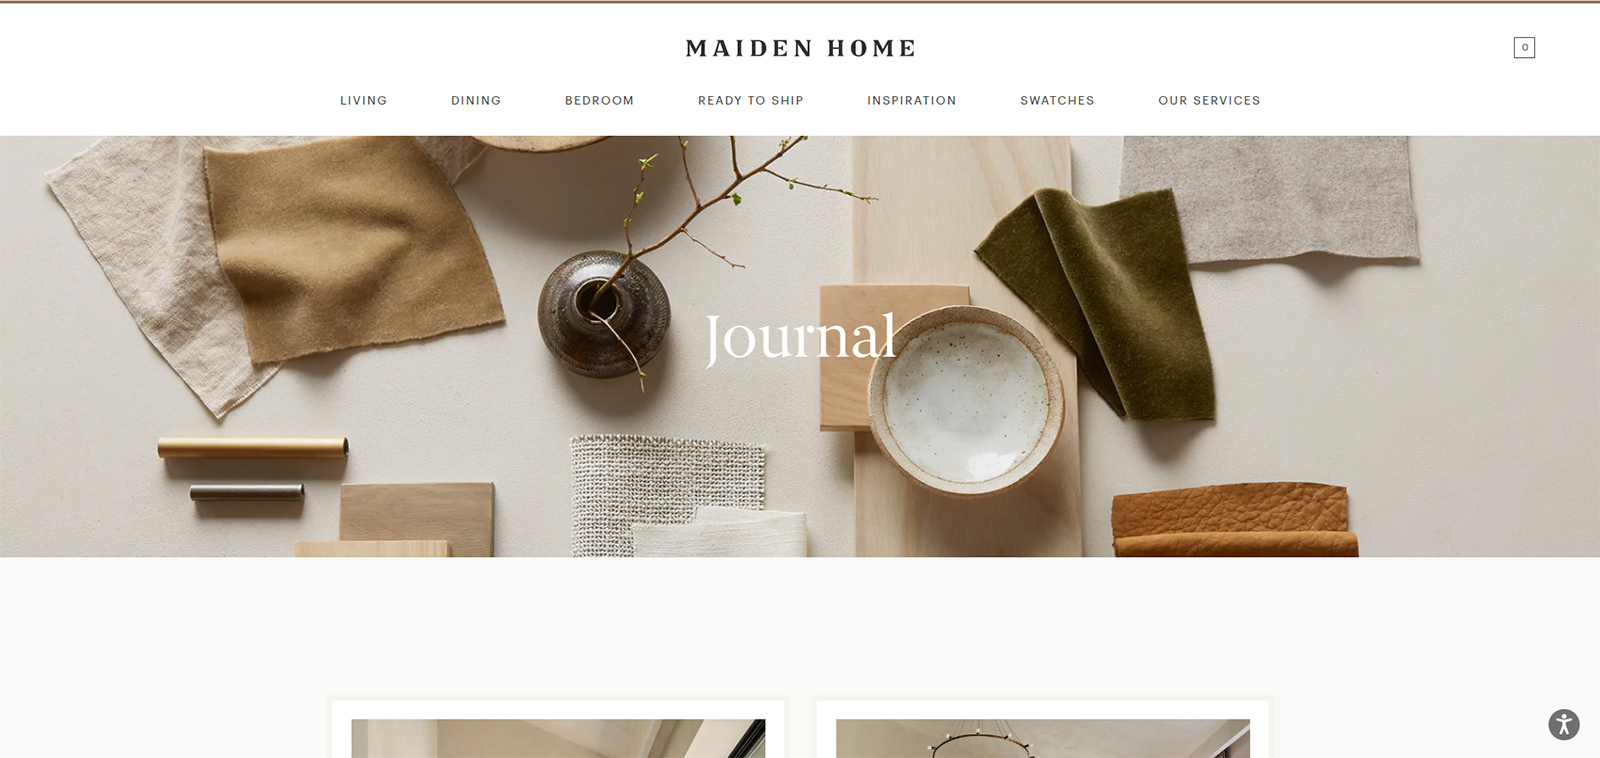 Maiden Home Blog